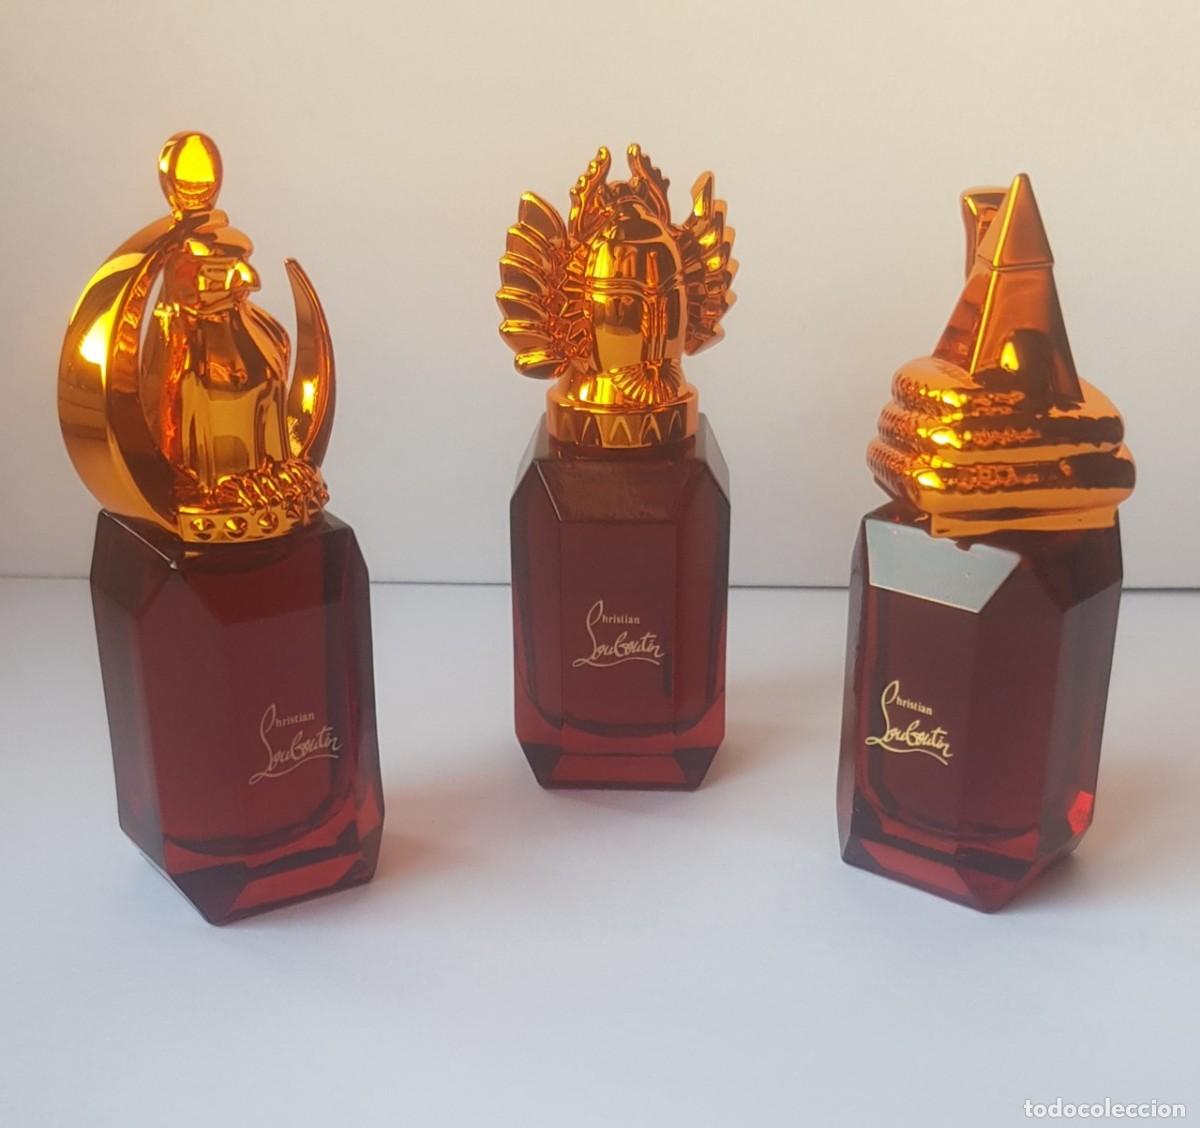 Miniatures set - Eau de parfum 7x9ml - Christian Louboutin United